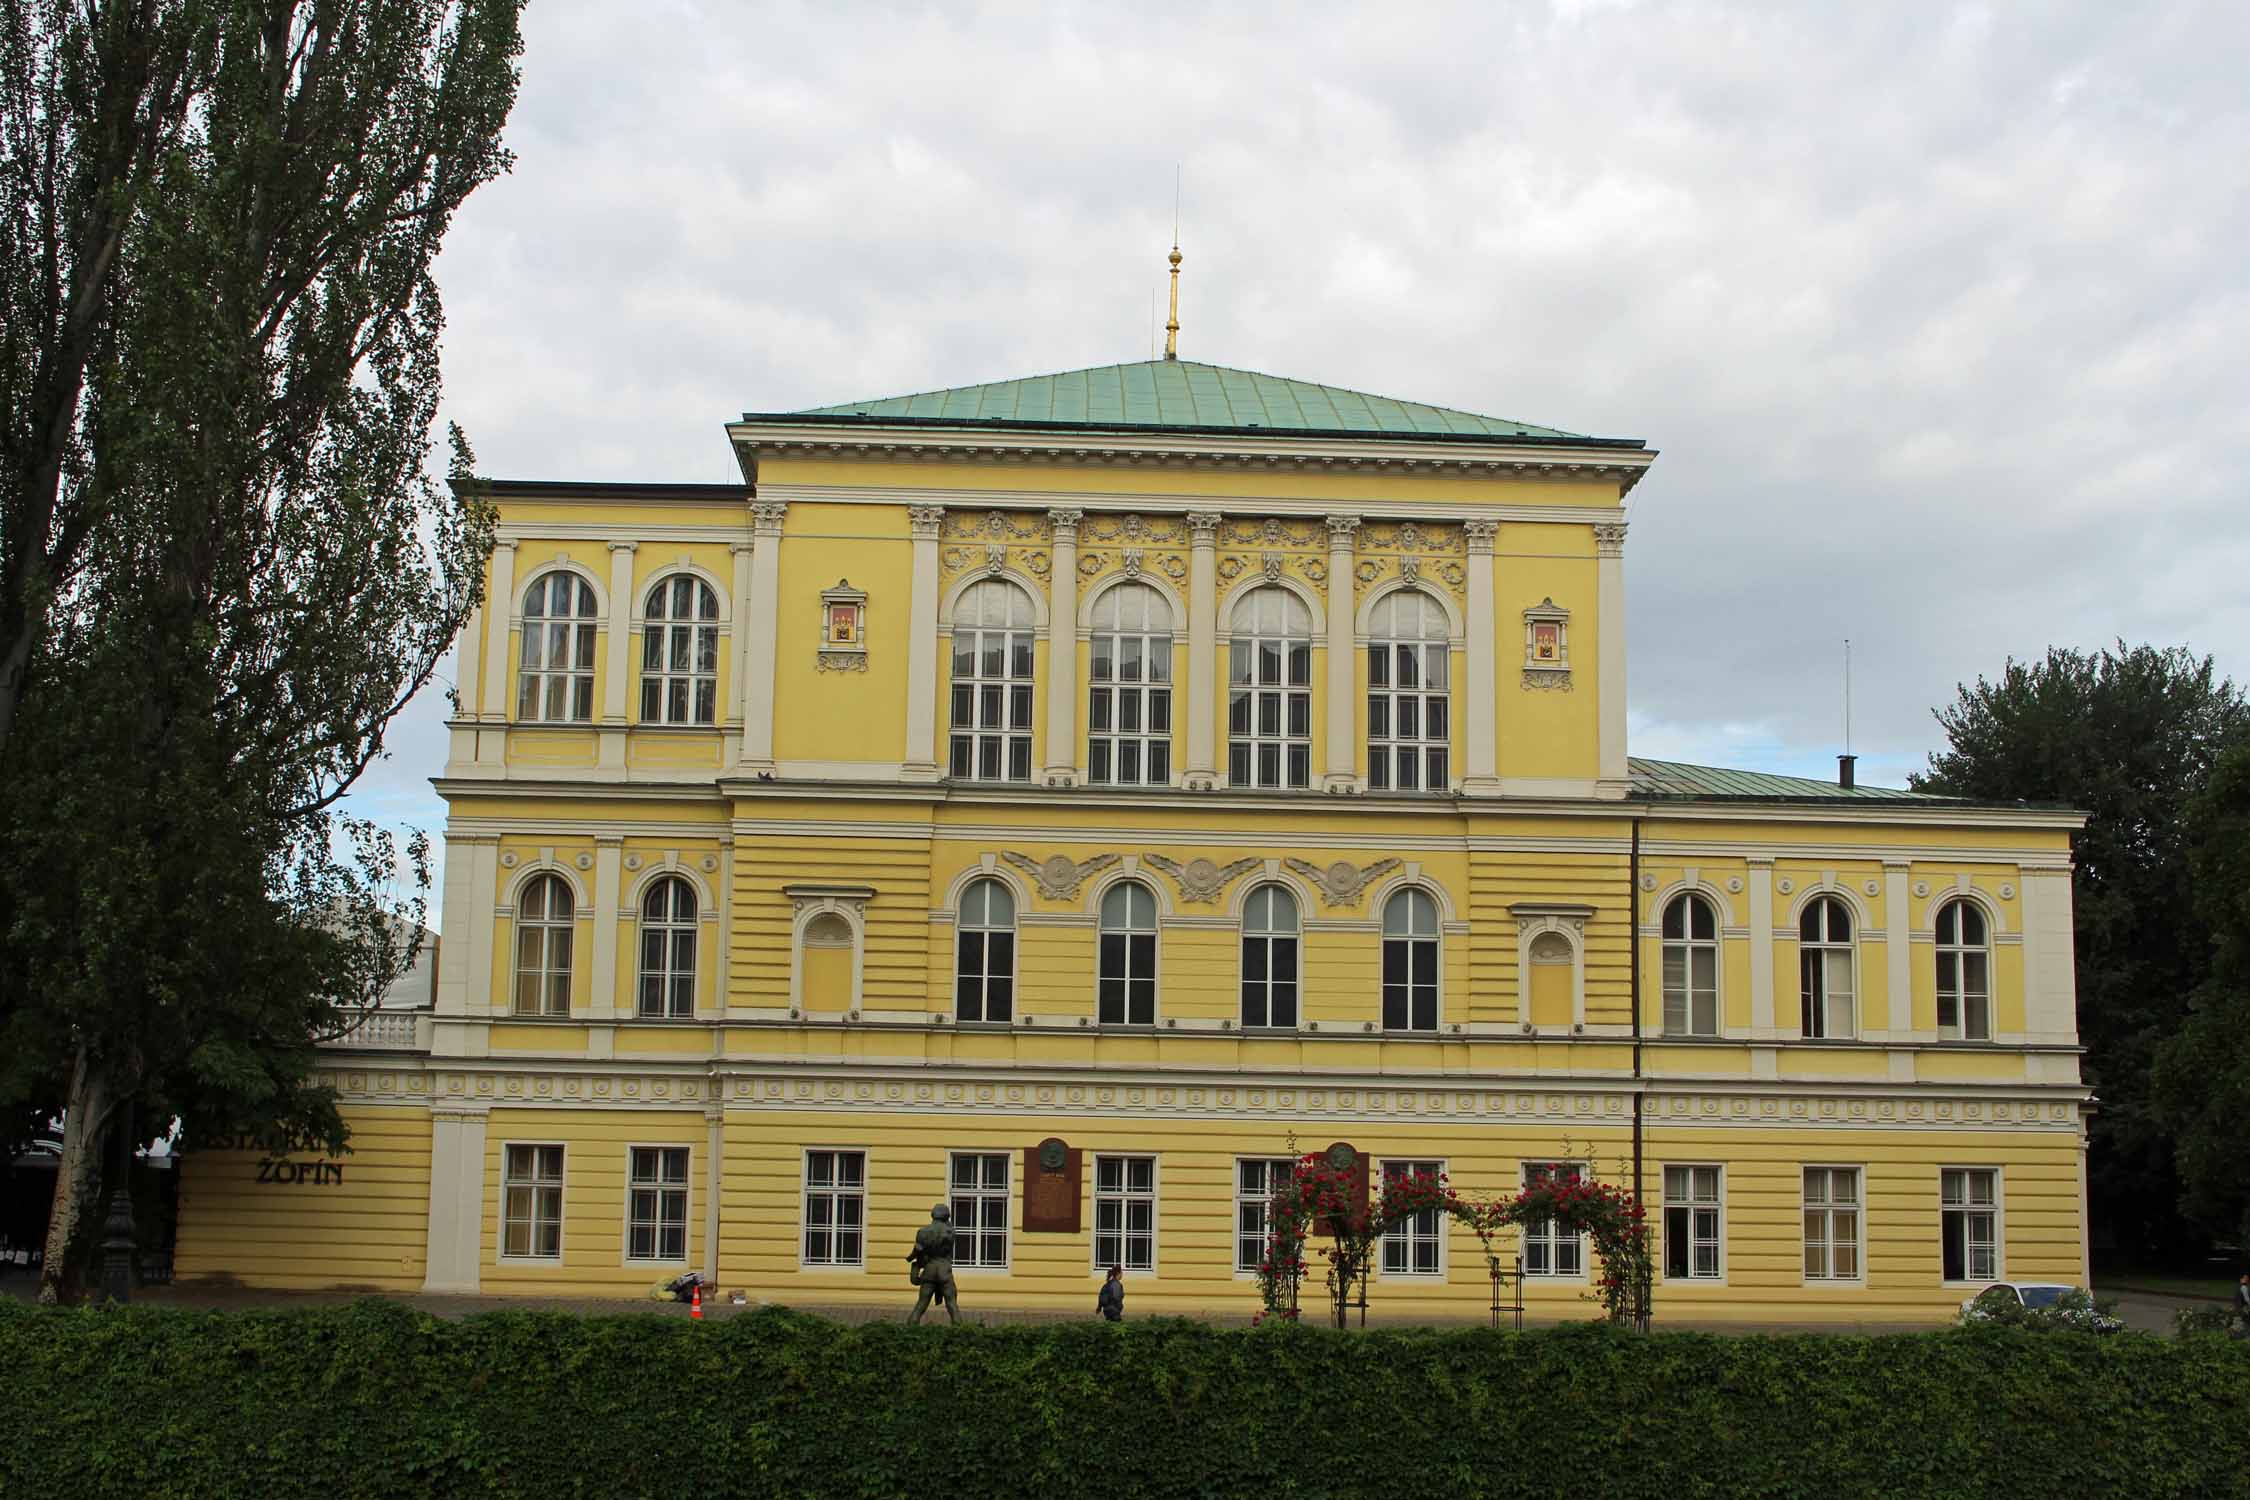 Palais Zofin